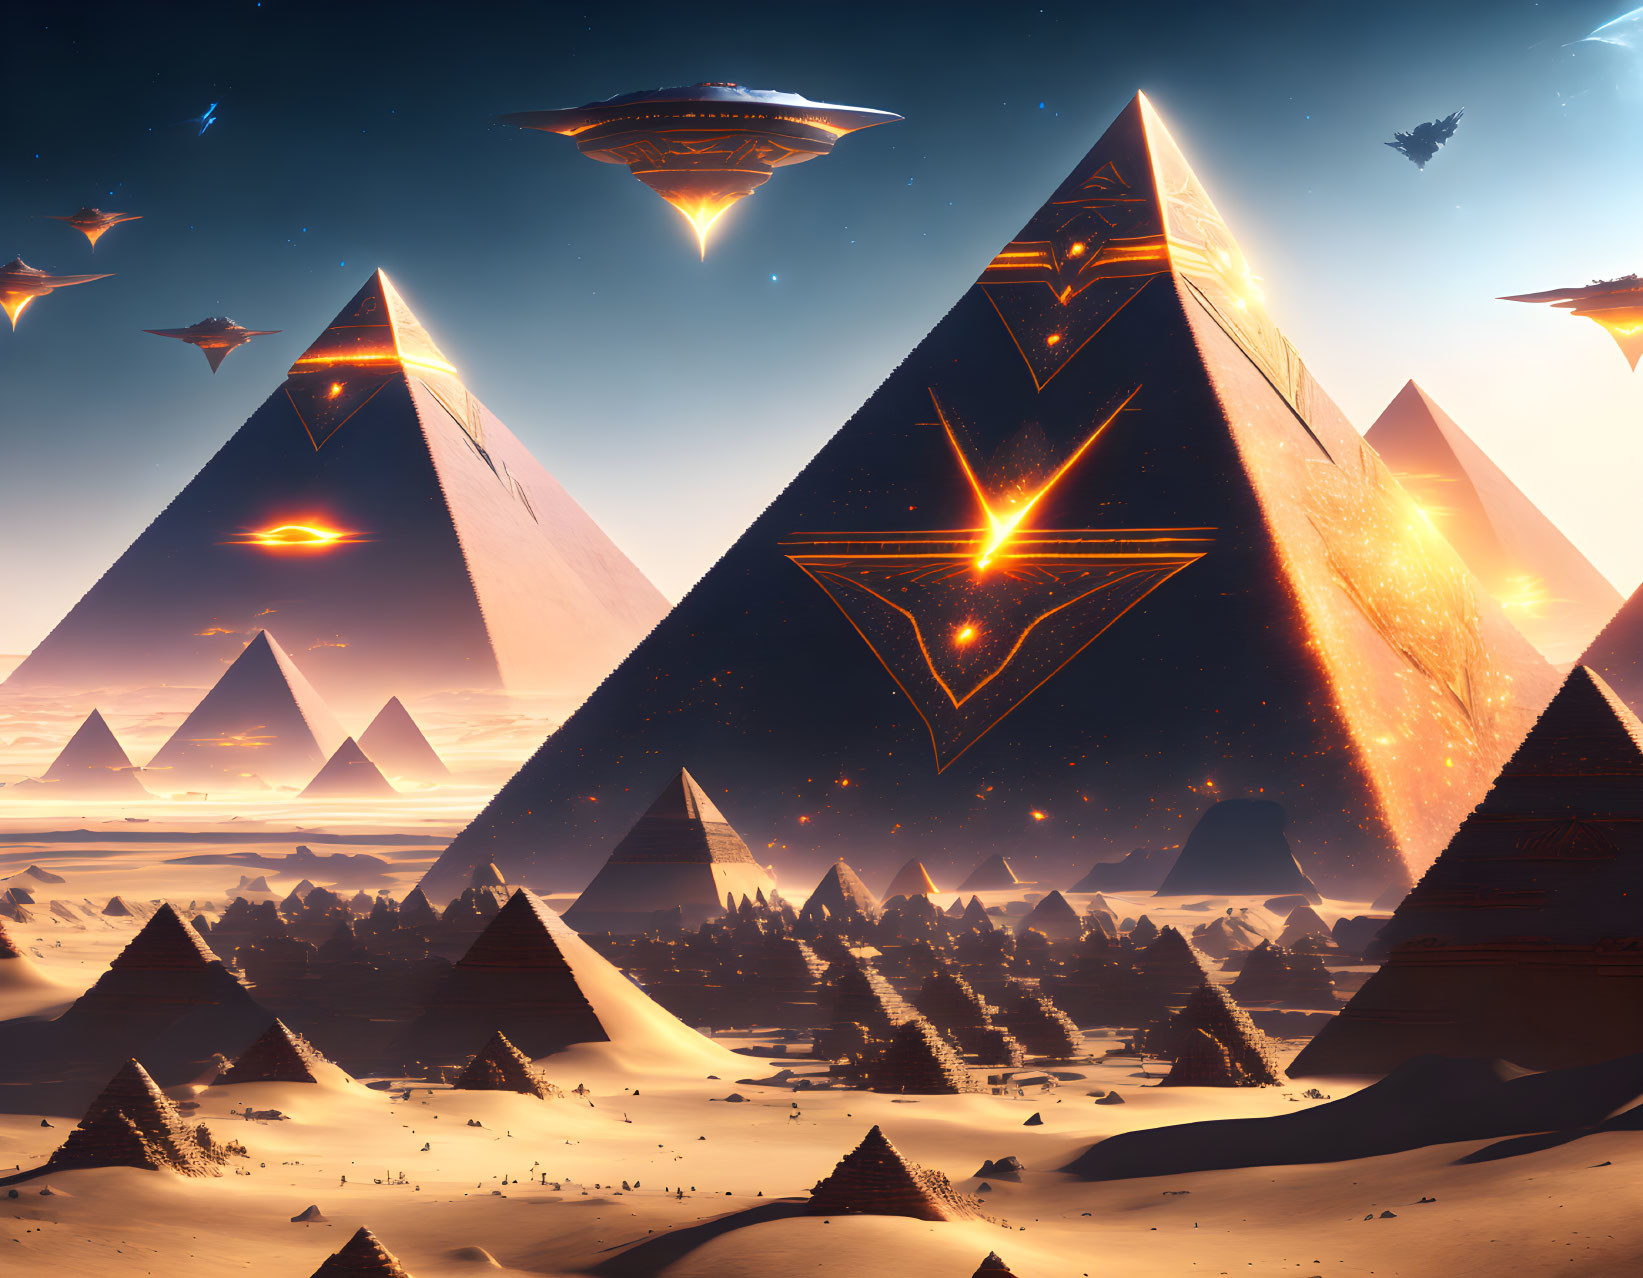 Extraterrestrial mega ancient pyramids